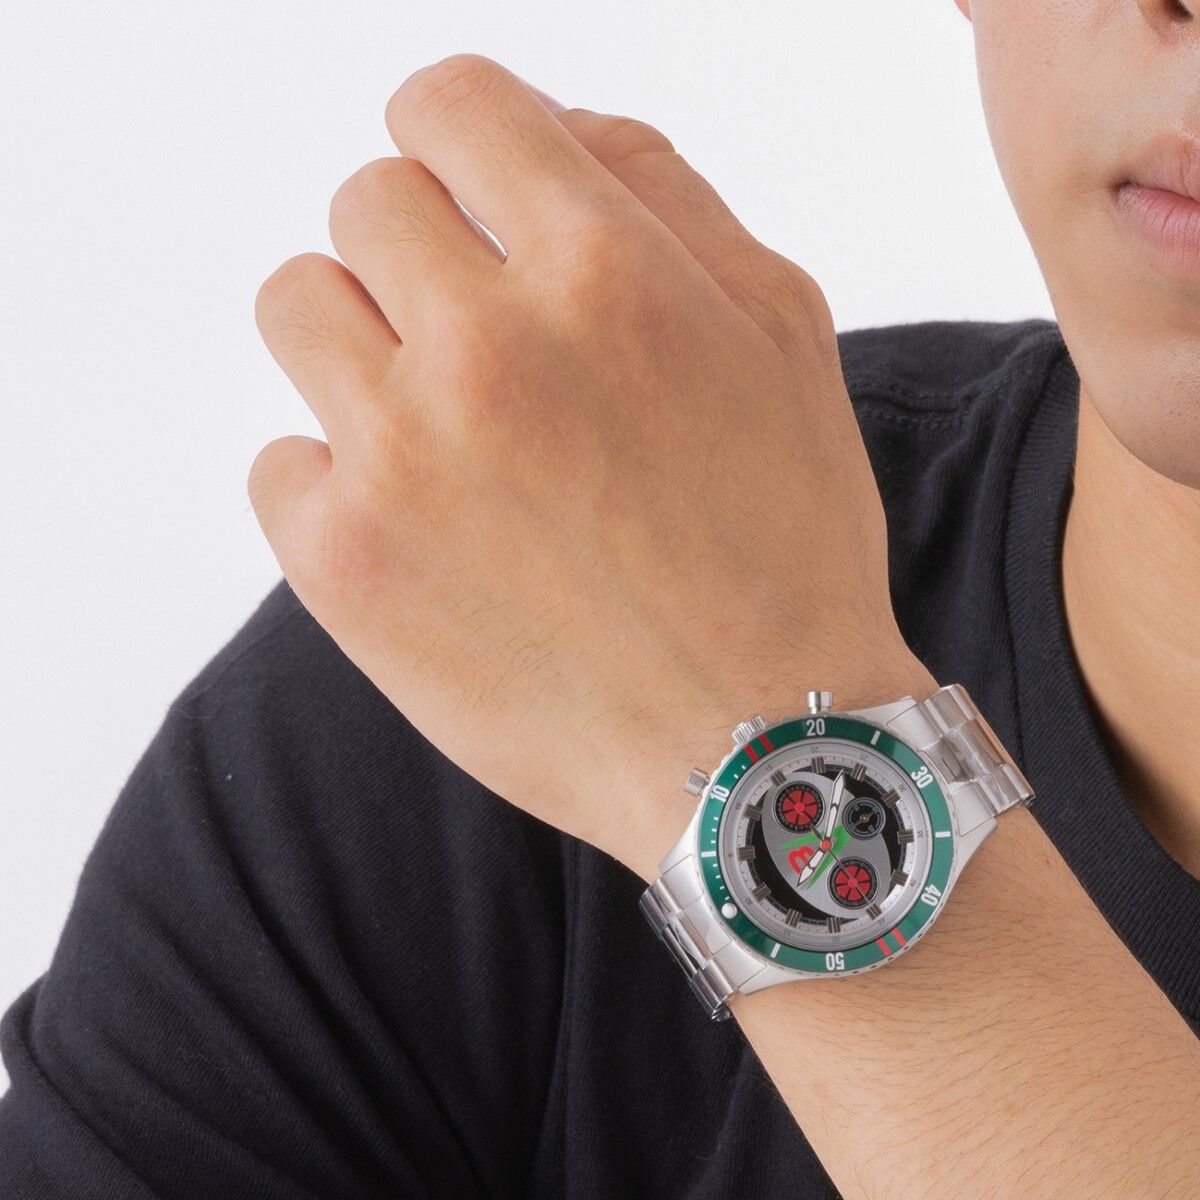 仮面ライダーV3 クロノグラフ腕時計【Live Action Watch】 | 仮面 